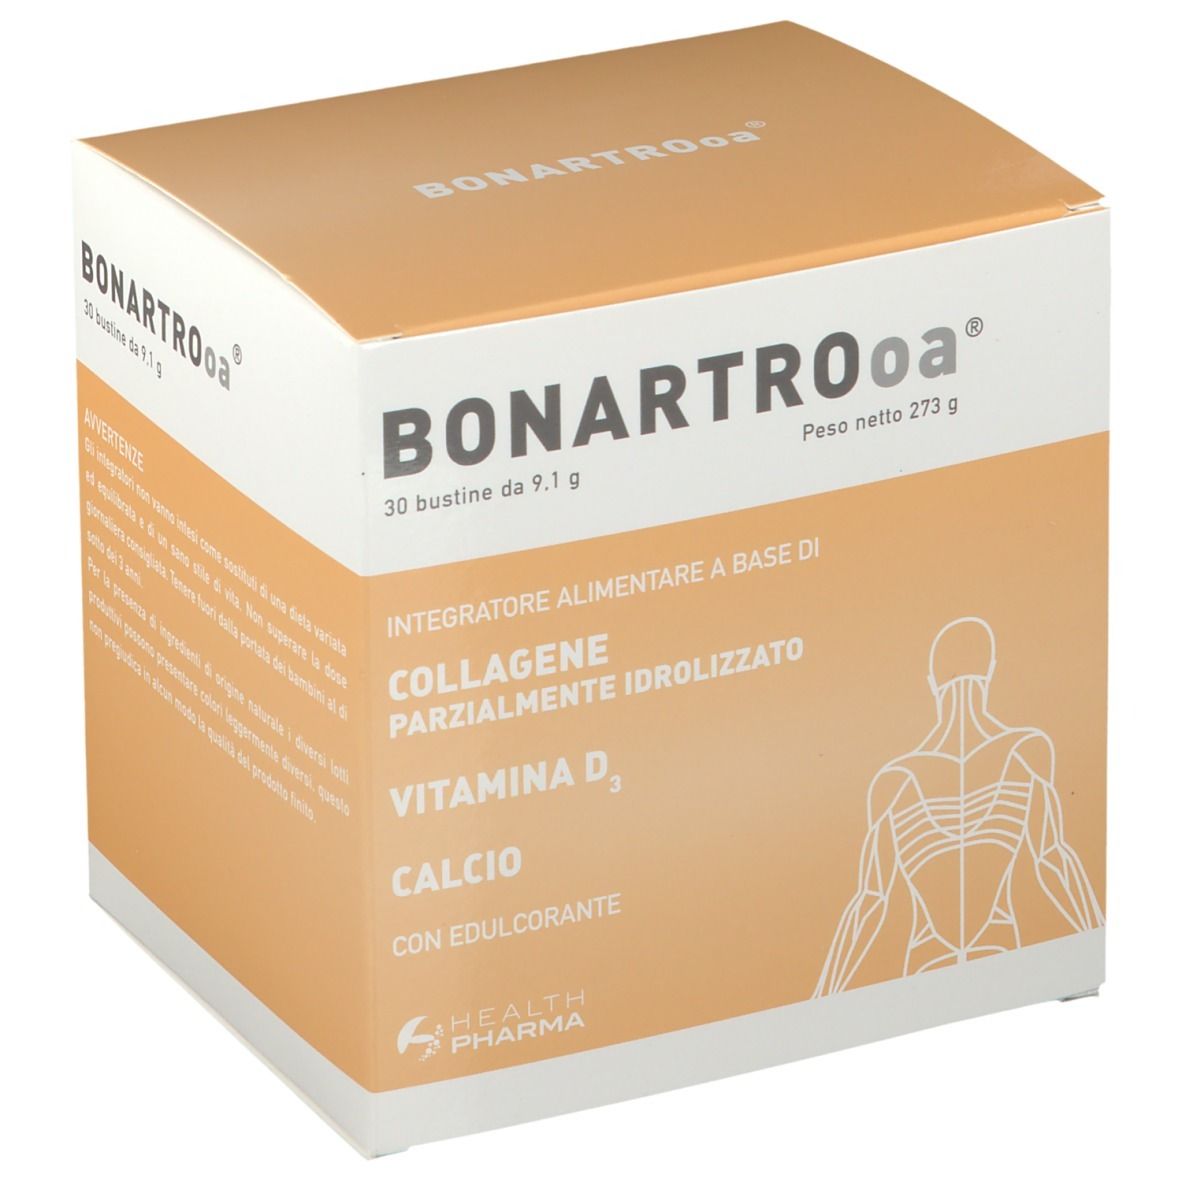 Image of BONARTROoa®